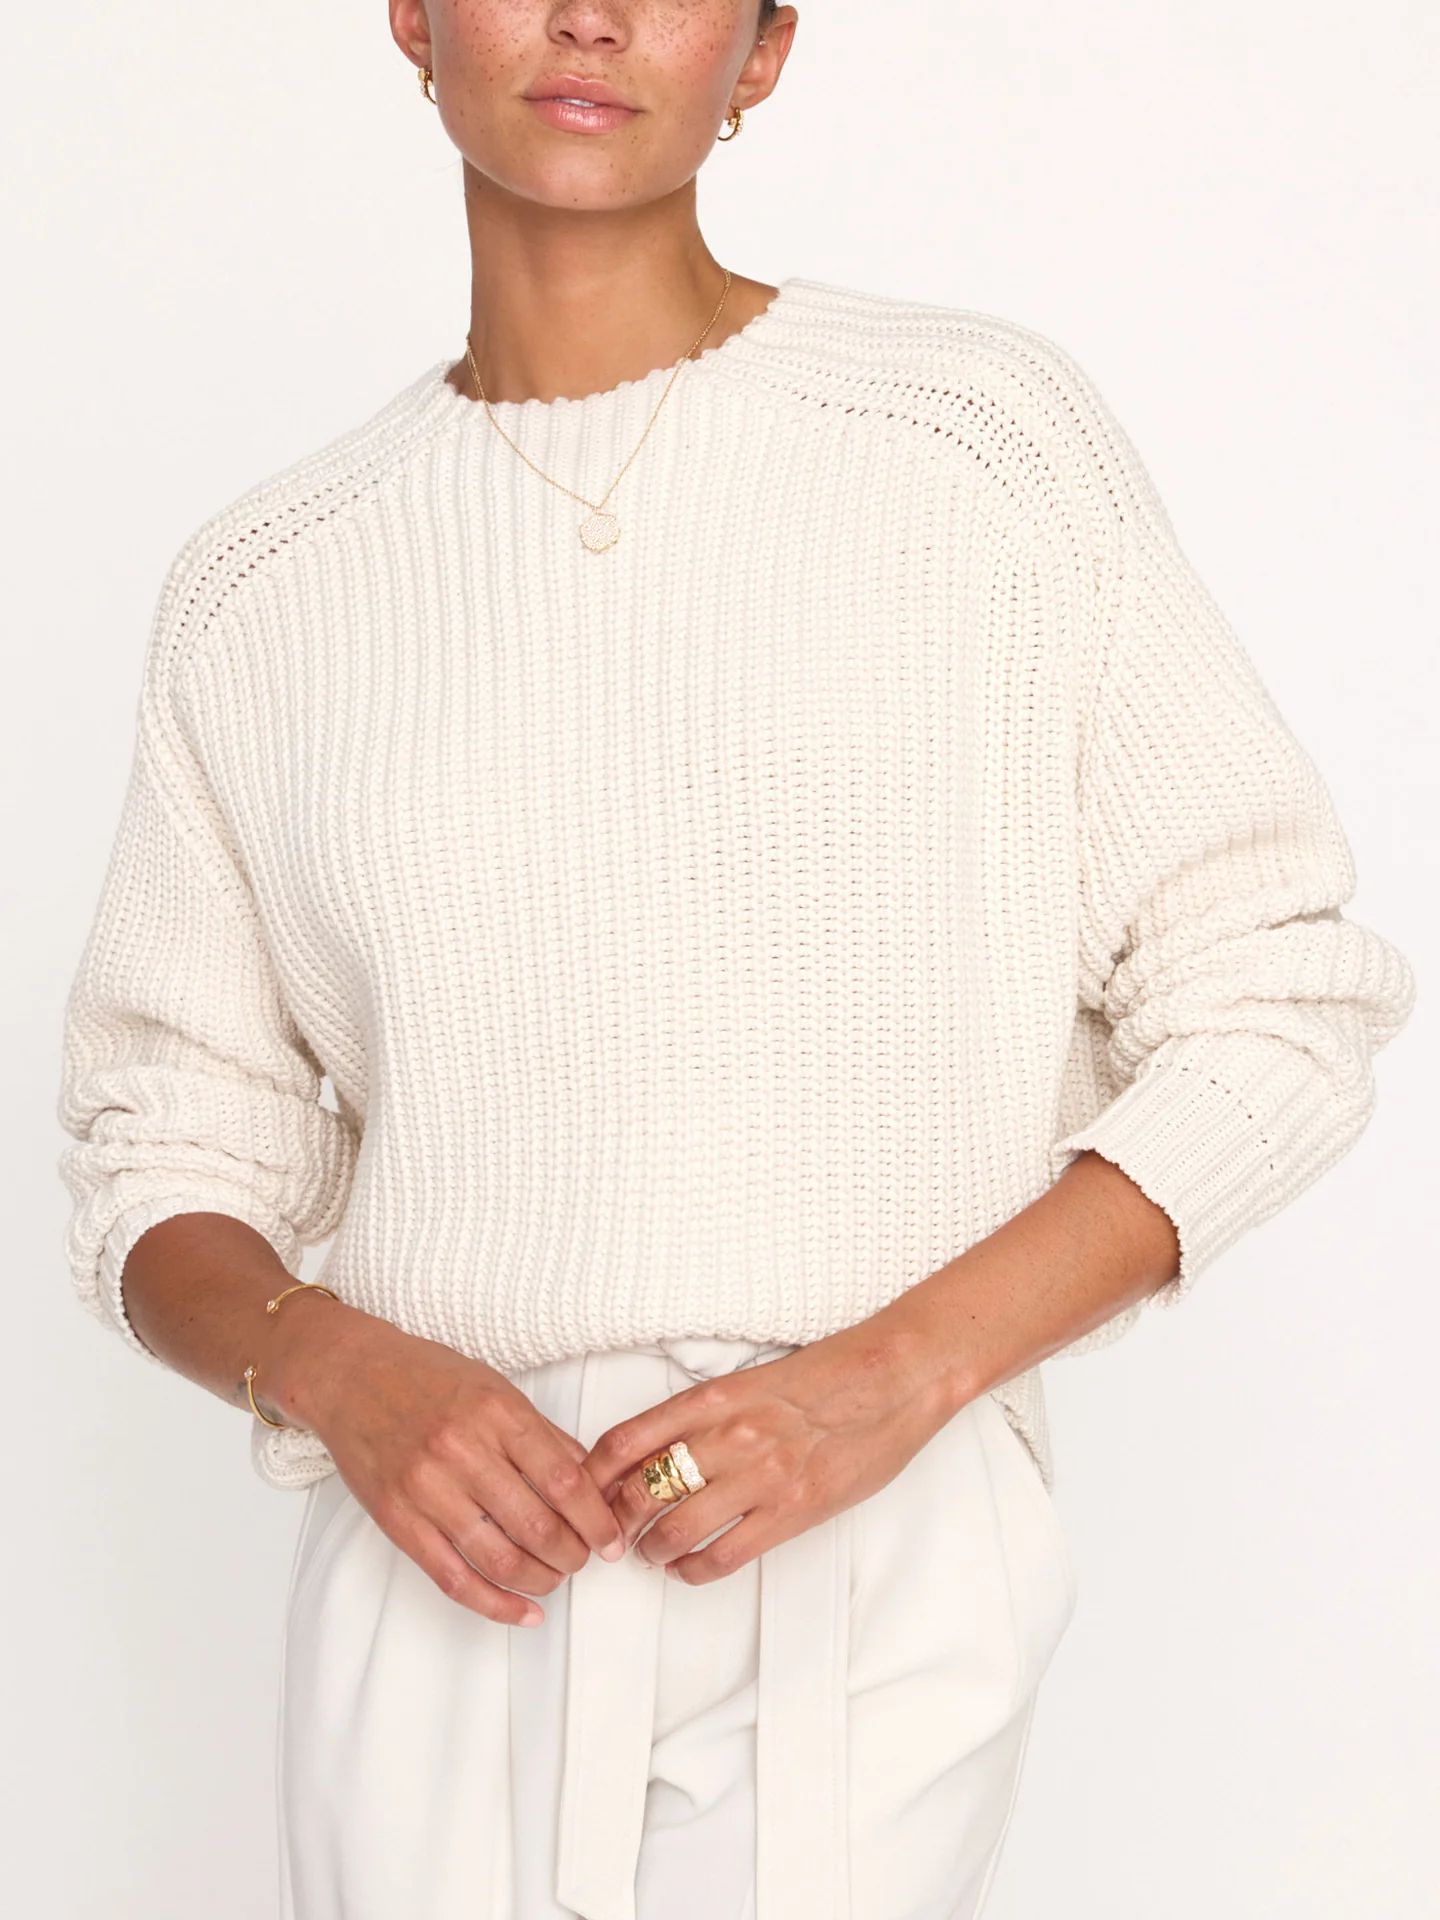 Brochu Walker | Women's Beckett Pullover Sweater in Ecru | Brochu Walker